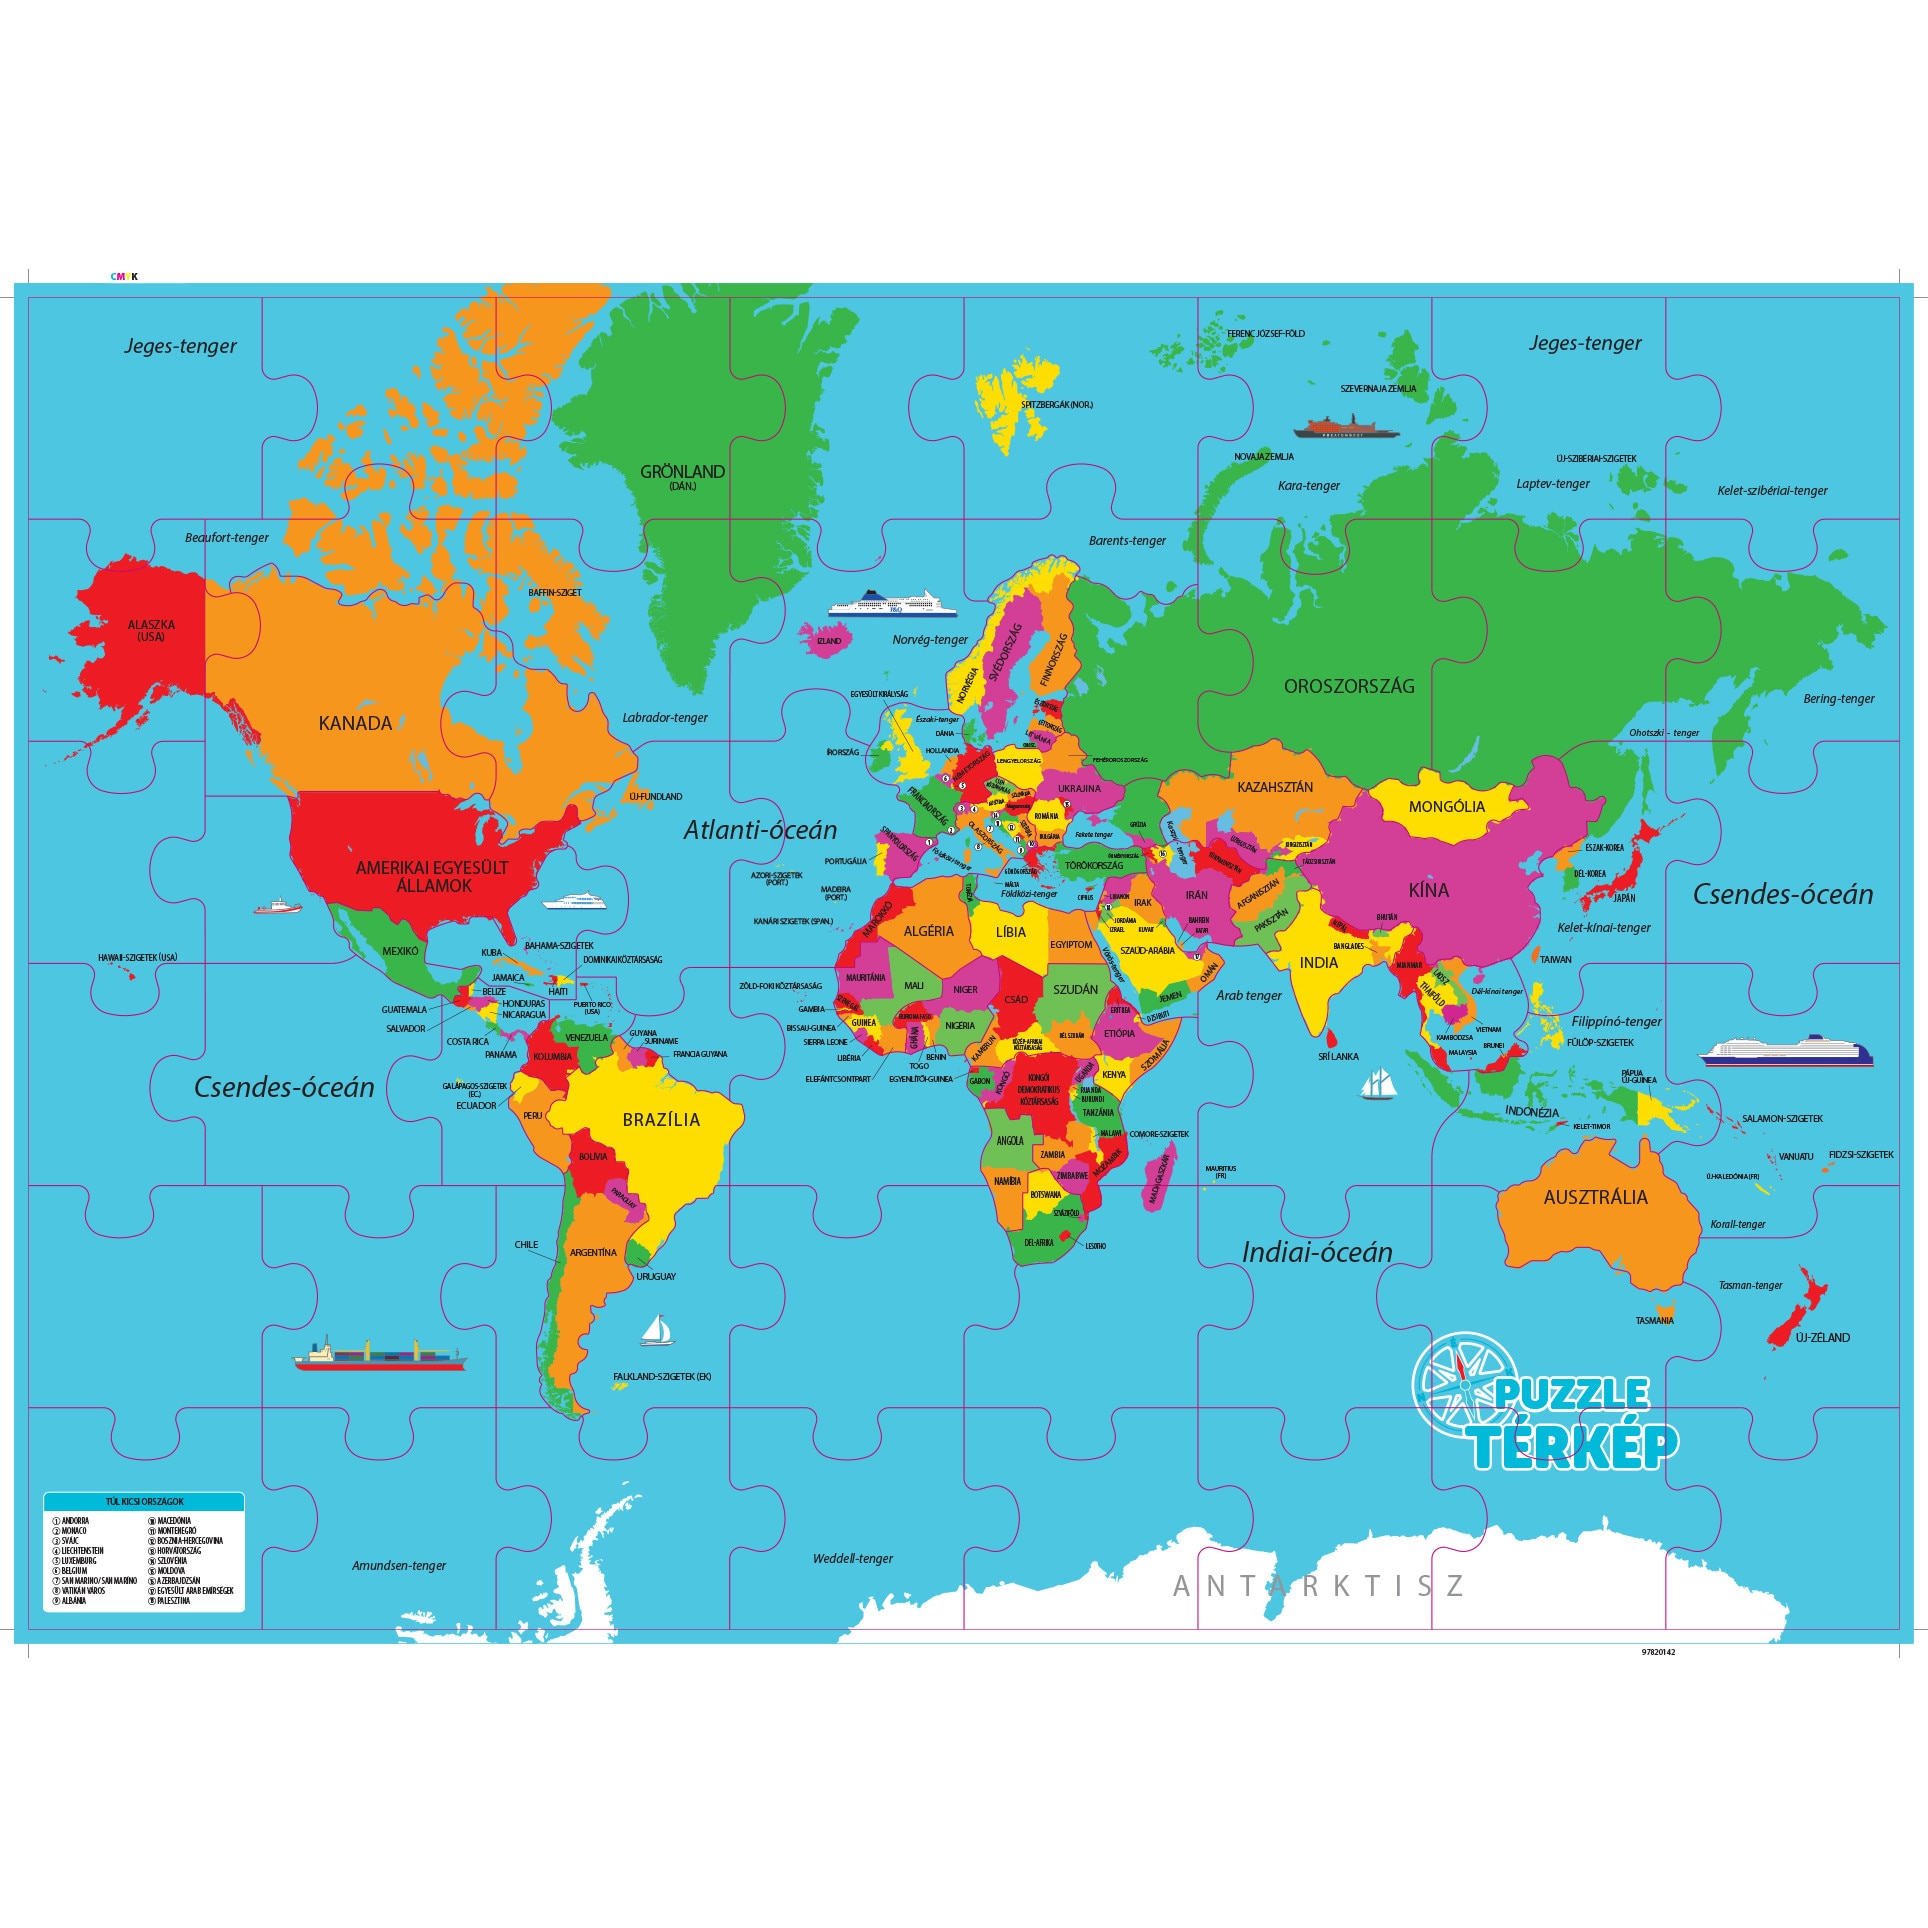 térkép világ Regio 62225 Vilag Terkep Magyarul 48 Darabos Puzzle Emag Hu térkép világ